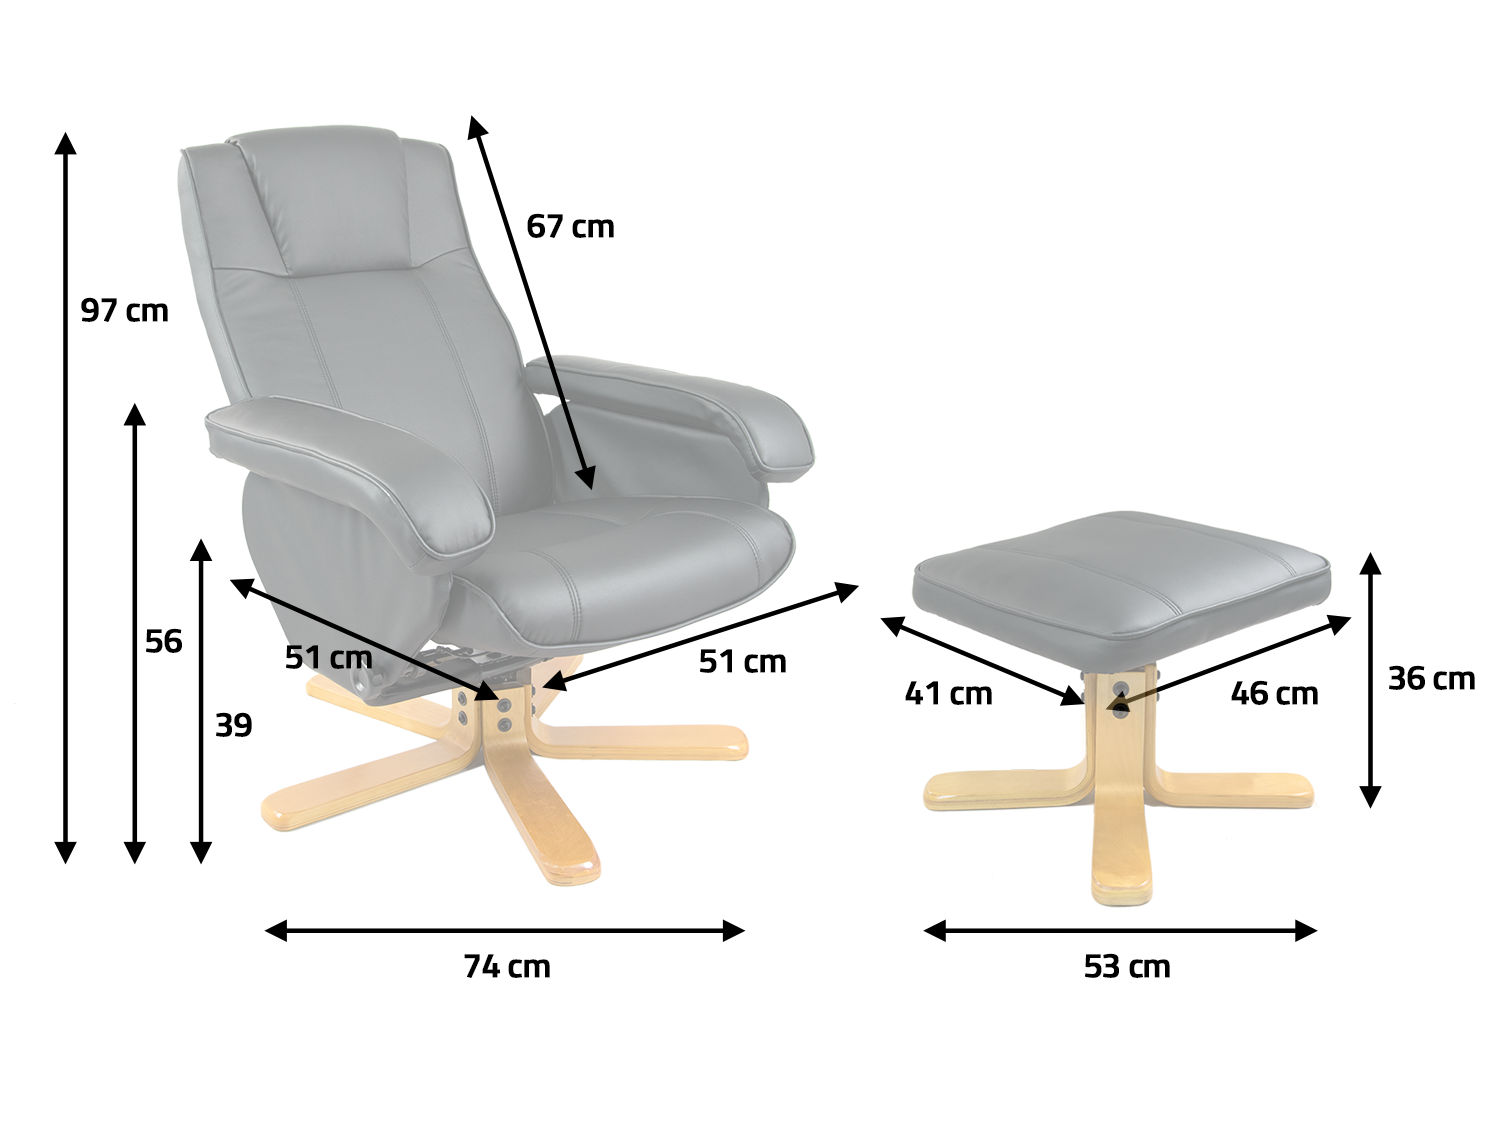 Высота подставки для ног. Кресло 201.167.59 17154. Кресло пациента «Сайма» с подставкой для ног. Пульт управления массажного кресла eg8805. Компактное кресло с подставкой для ног.